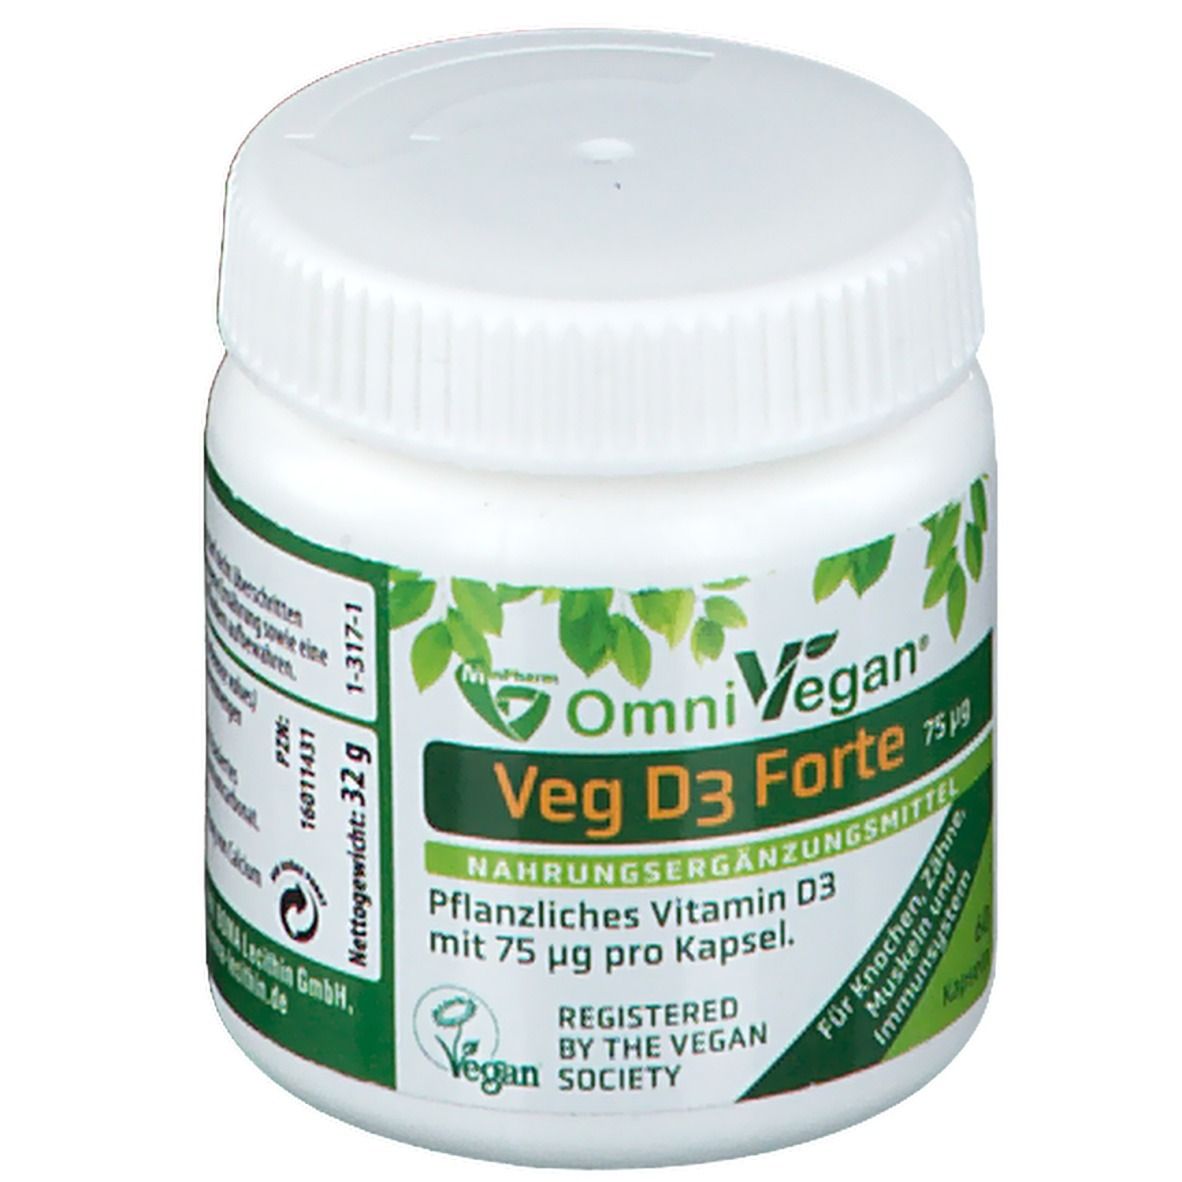 Omnivegan® Veg D3 Forte